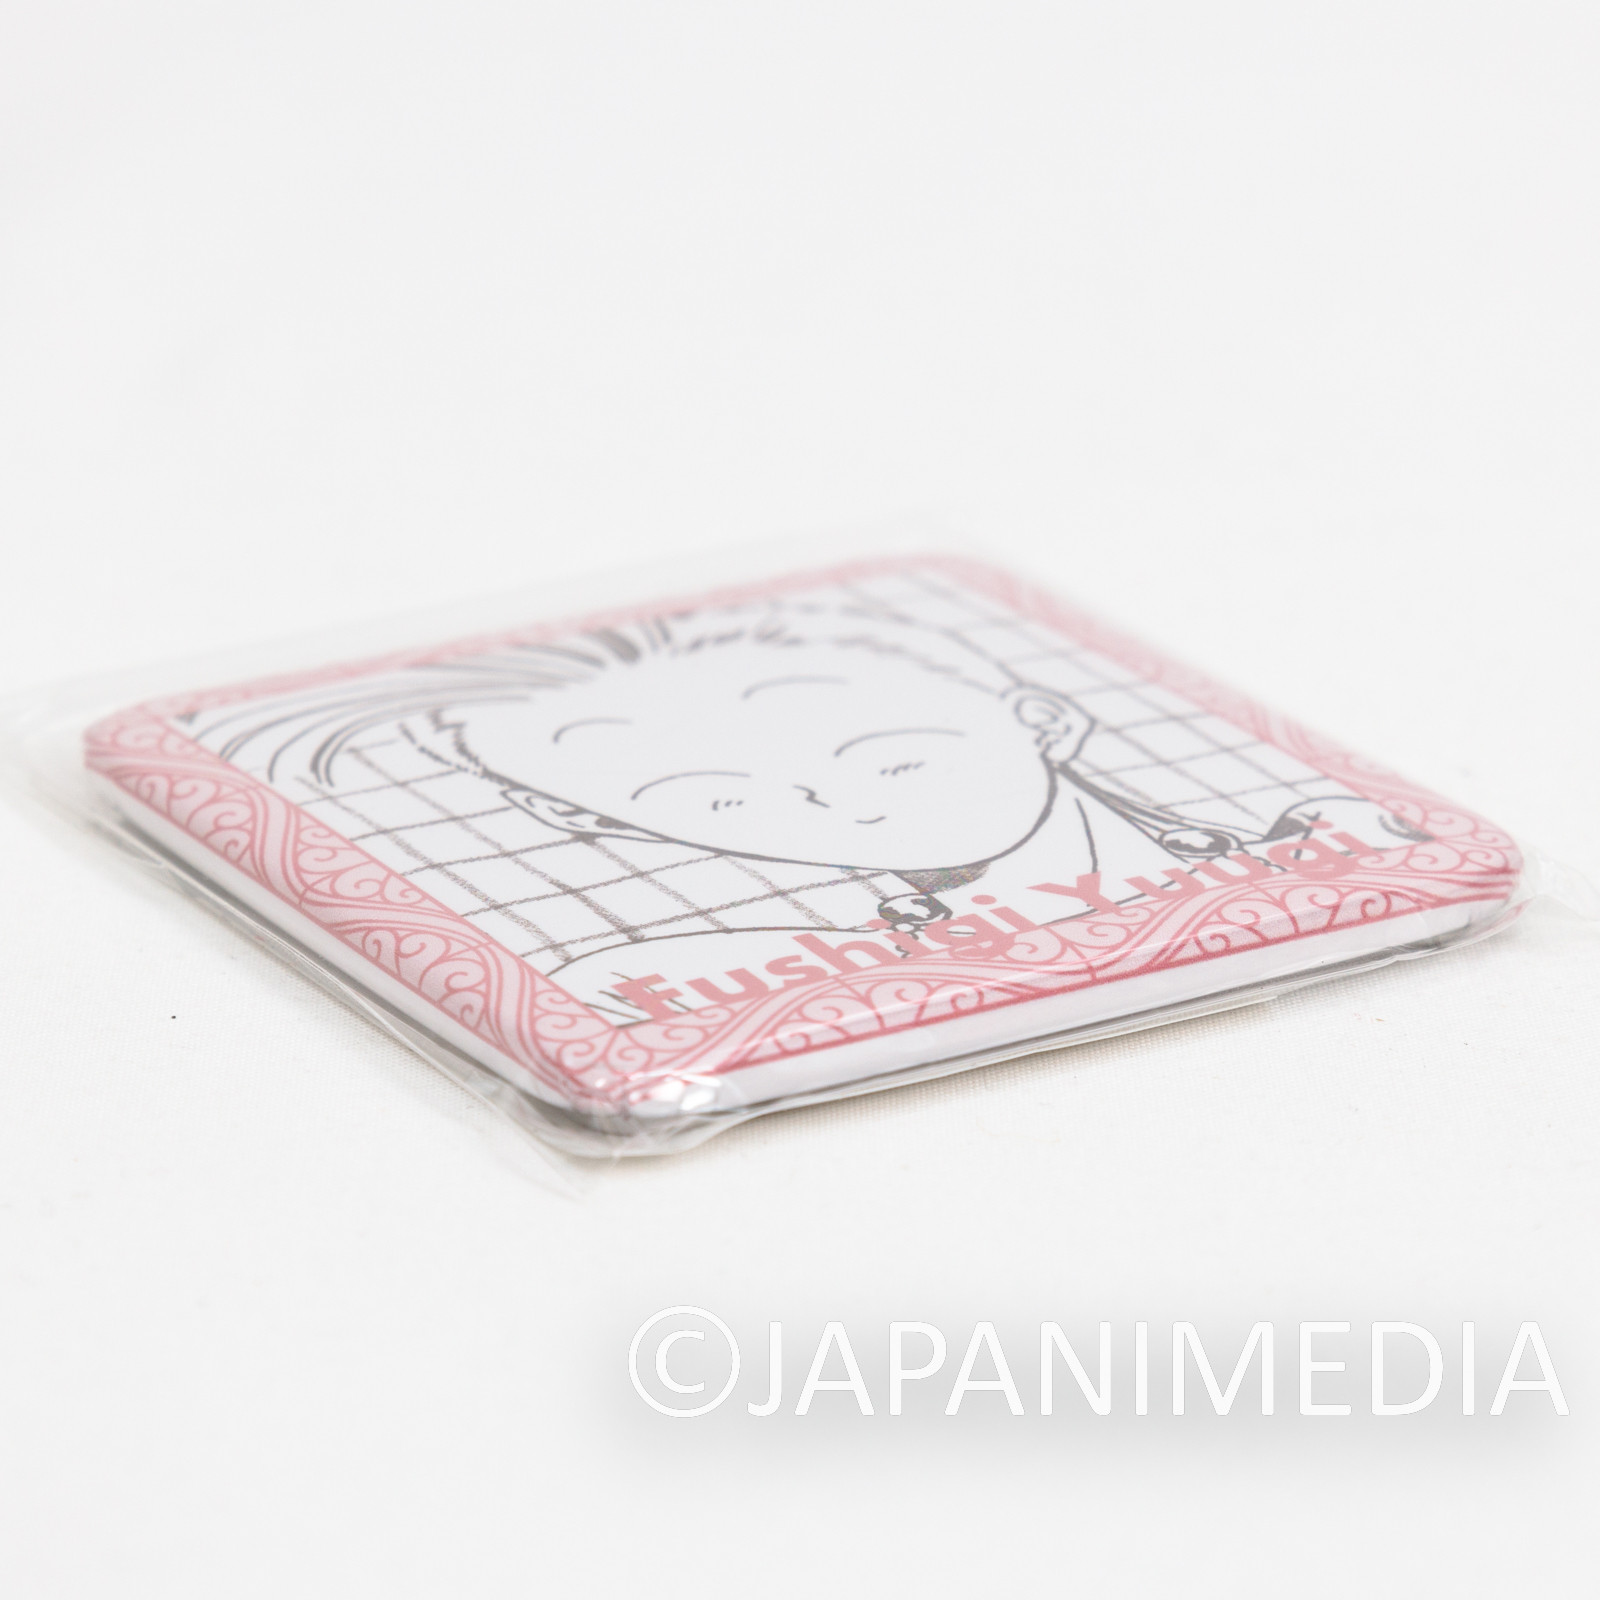 Fushigi Yugi Chichiri Can Badge Pins JAPAN ANIME